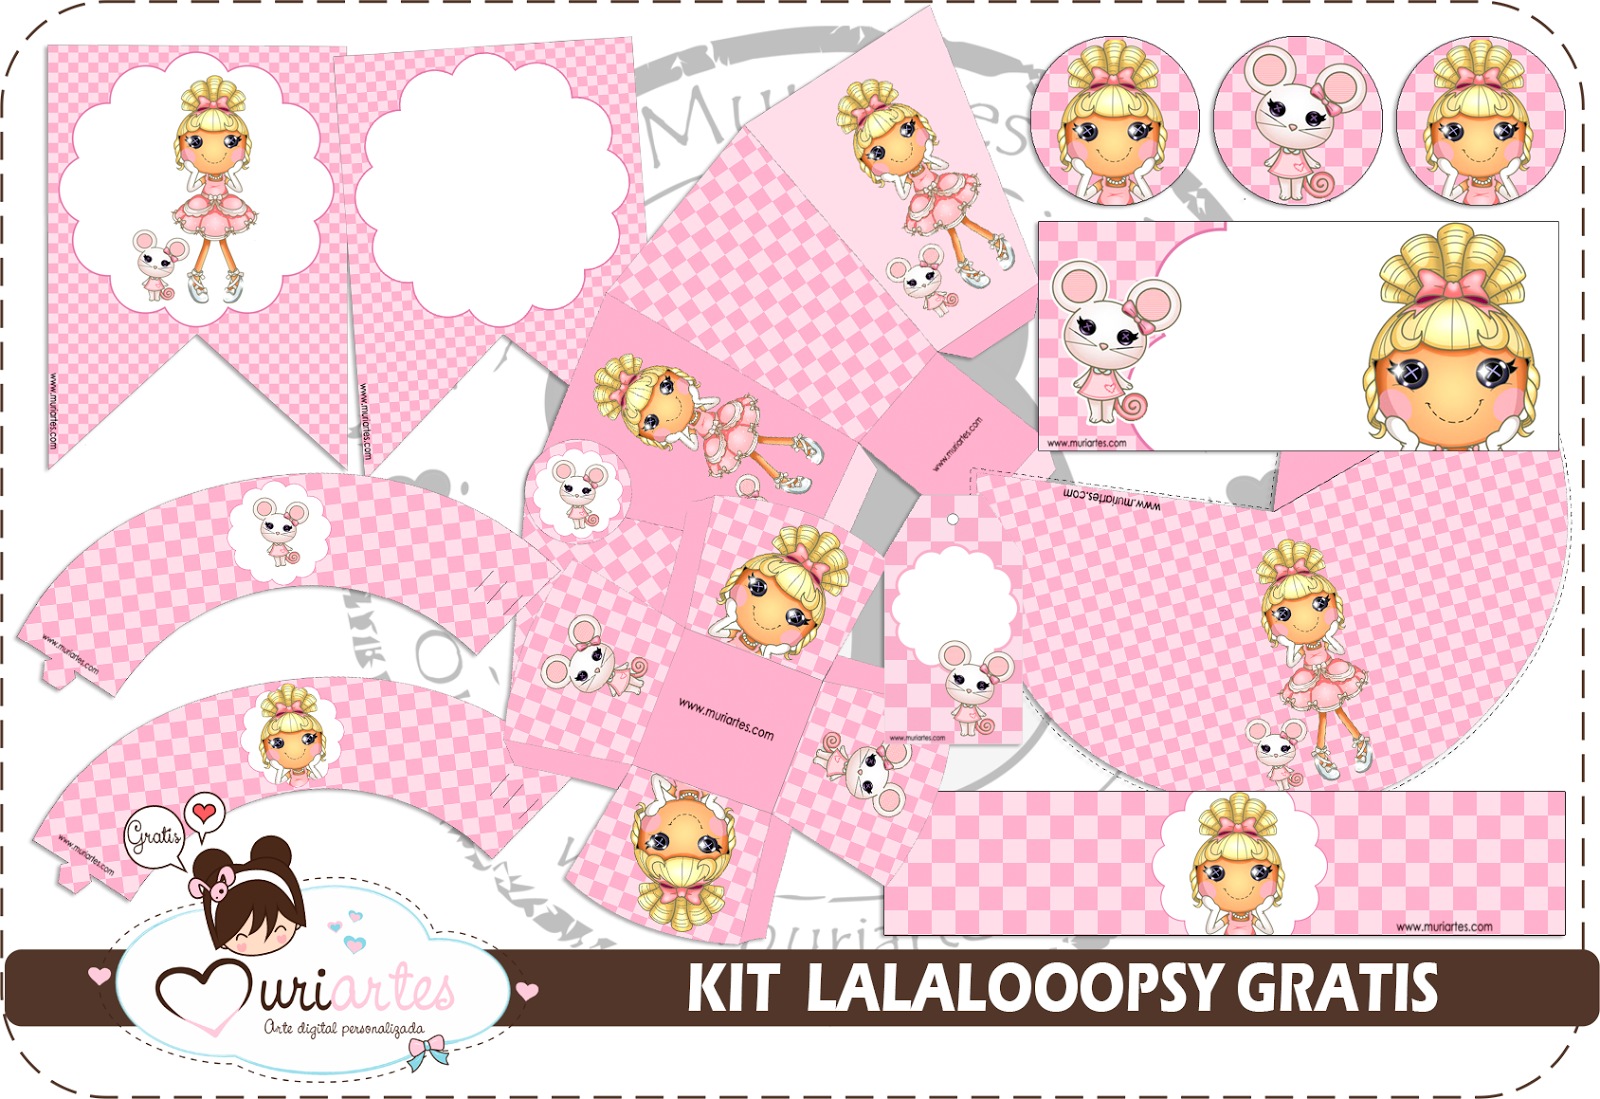 8. Lalaloopsy Kit - wide 9